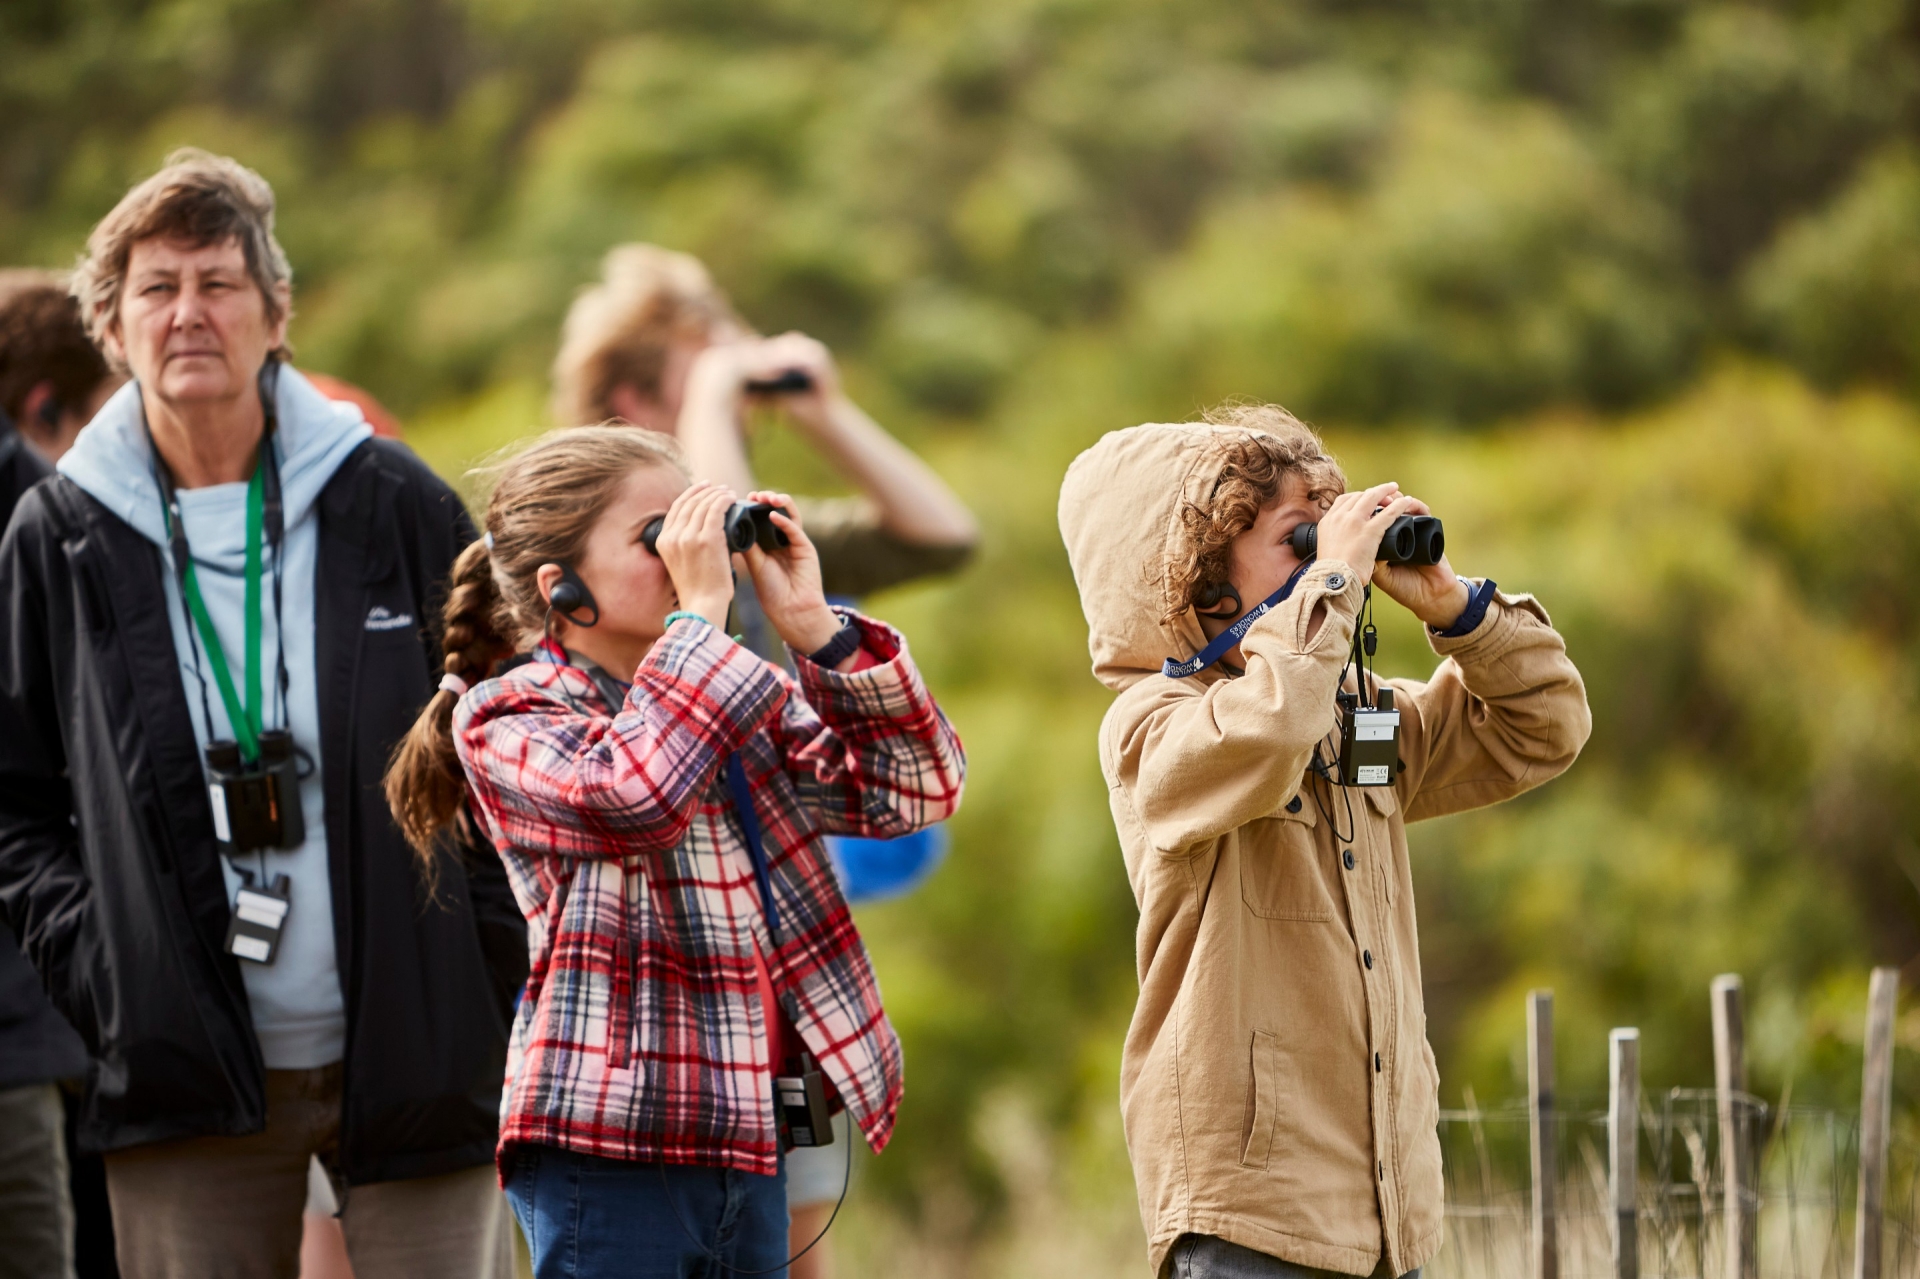 维多利亚州，大洋路，野生动物奇观，孩子们使用助听器和双筒望远镜观赏野生动物 © 澳大利亚旅游局/维多利亚州旅游局版权所有